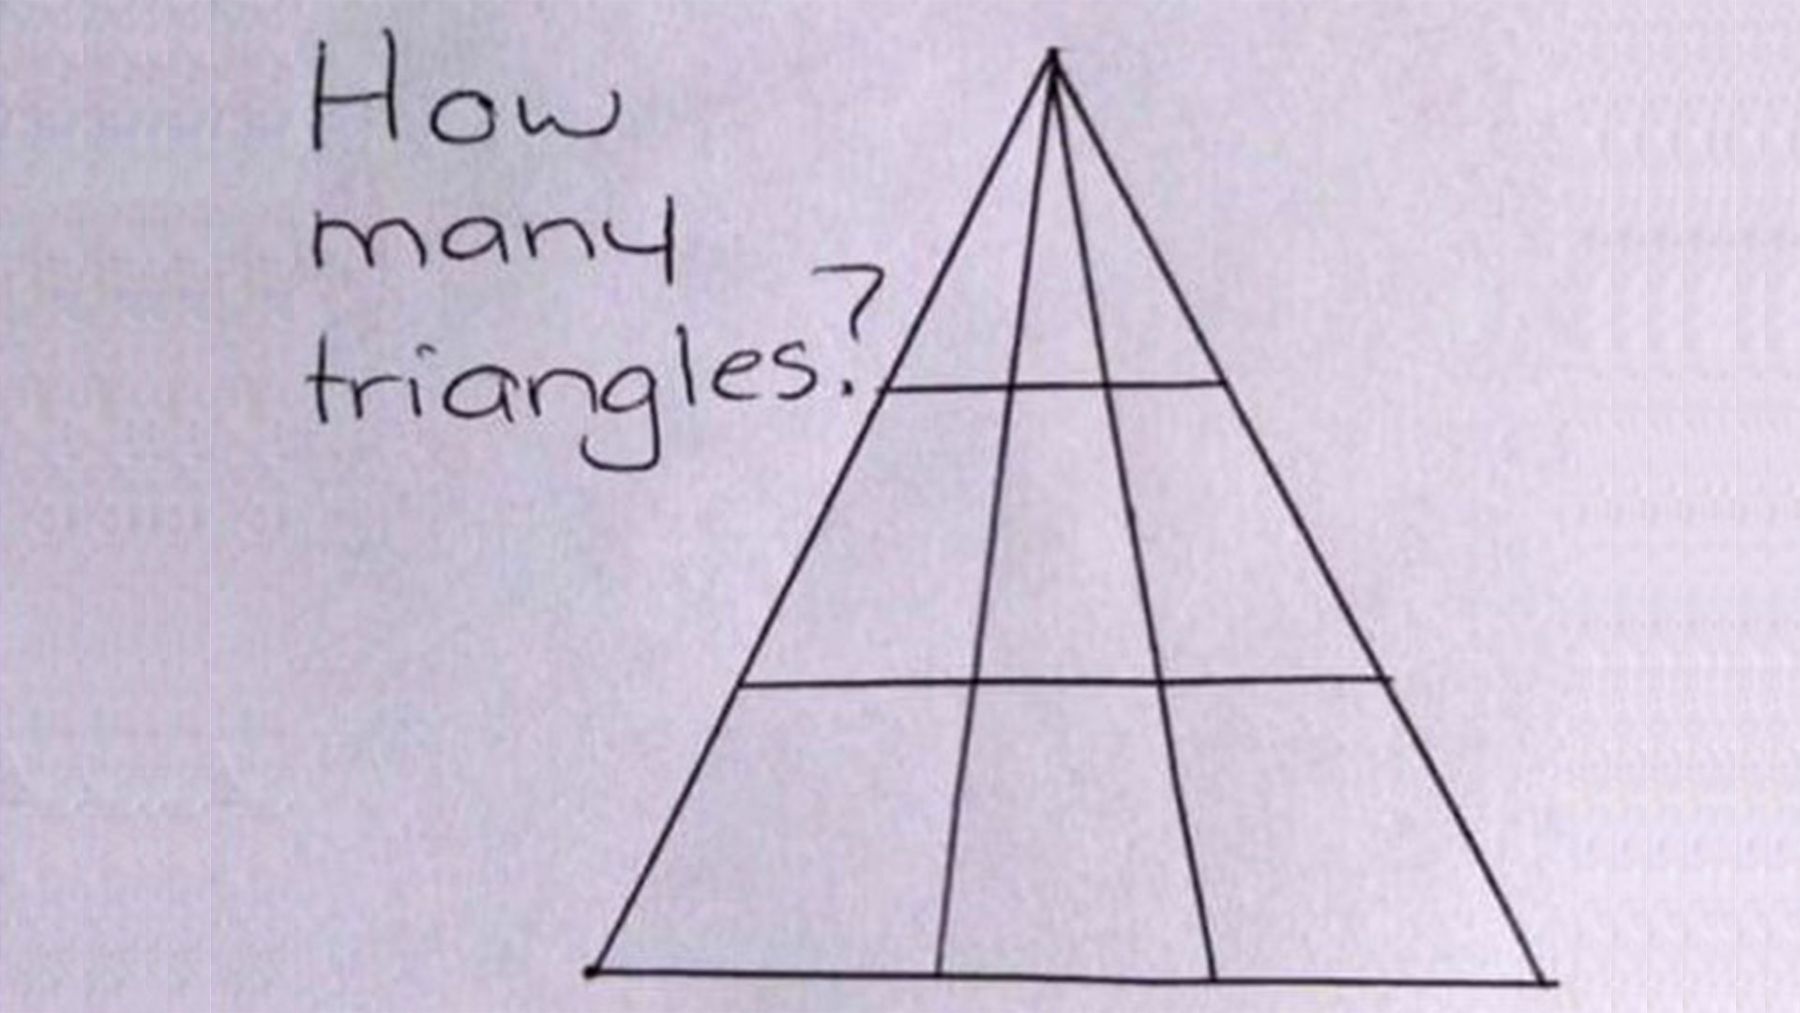 Este es el triángulo del que todo el mundo quiere saber cuántos tiene realmente